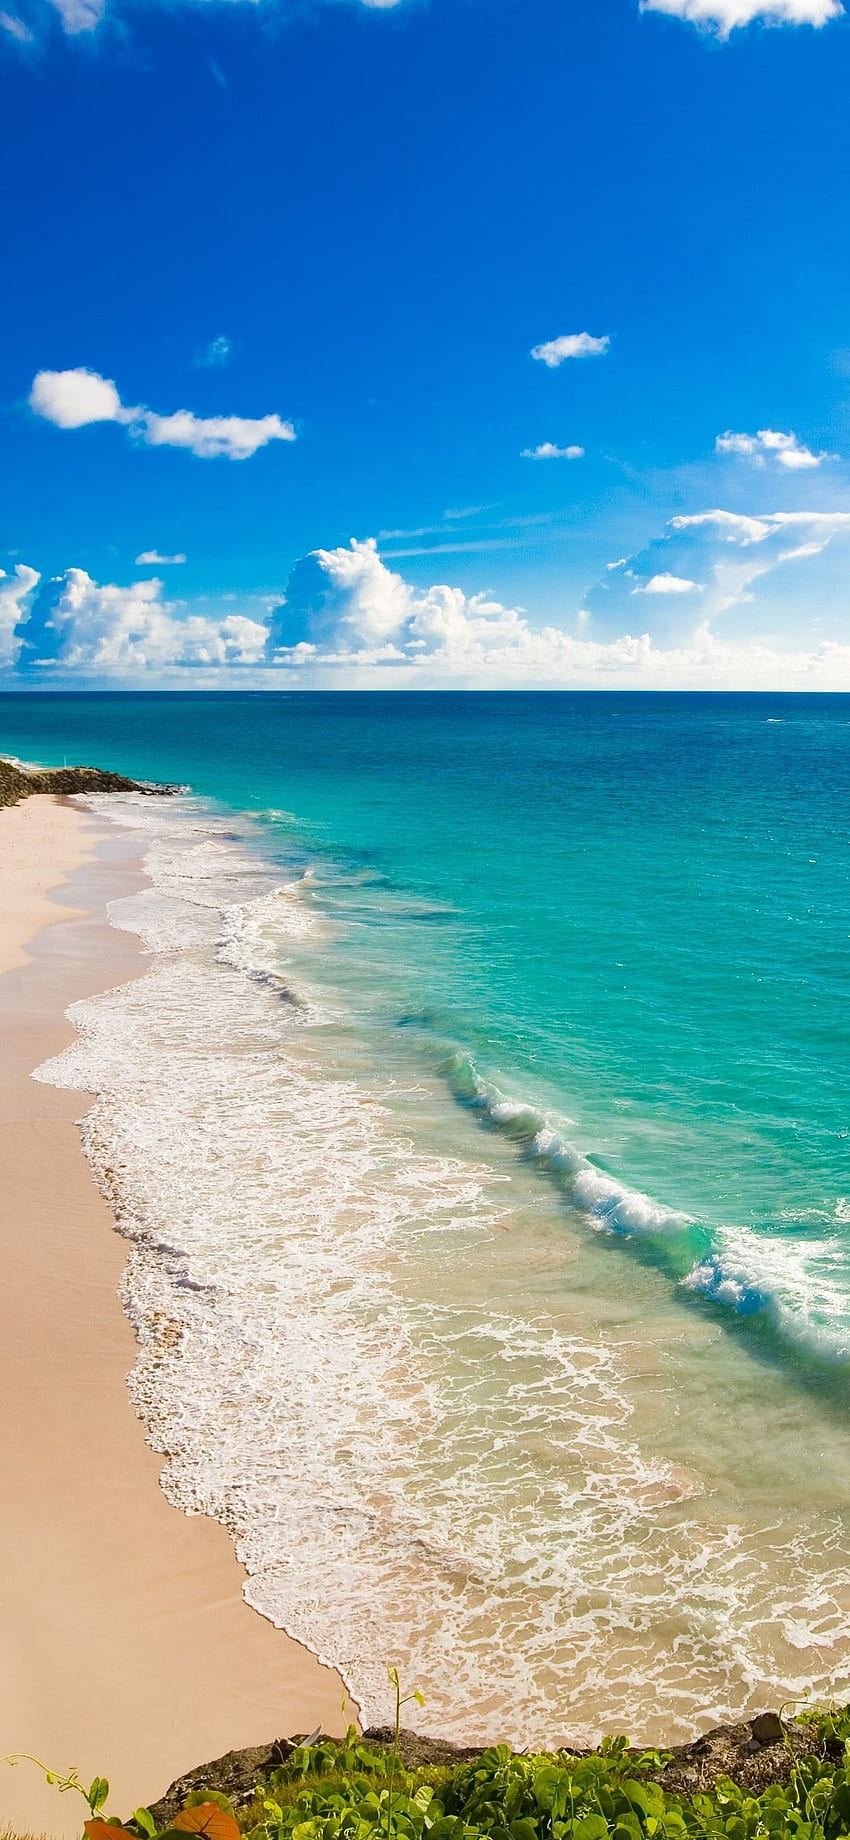 Beach, blue sea, sunshine, tropical iPhone XS Max, Sunny Beach iPhone HD phone wallpaper